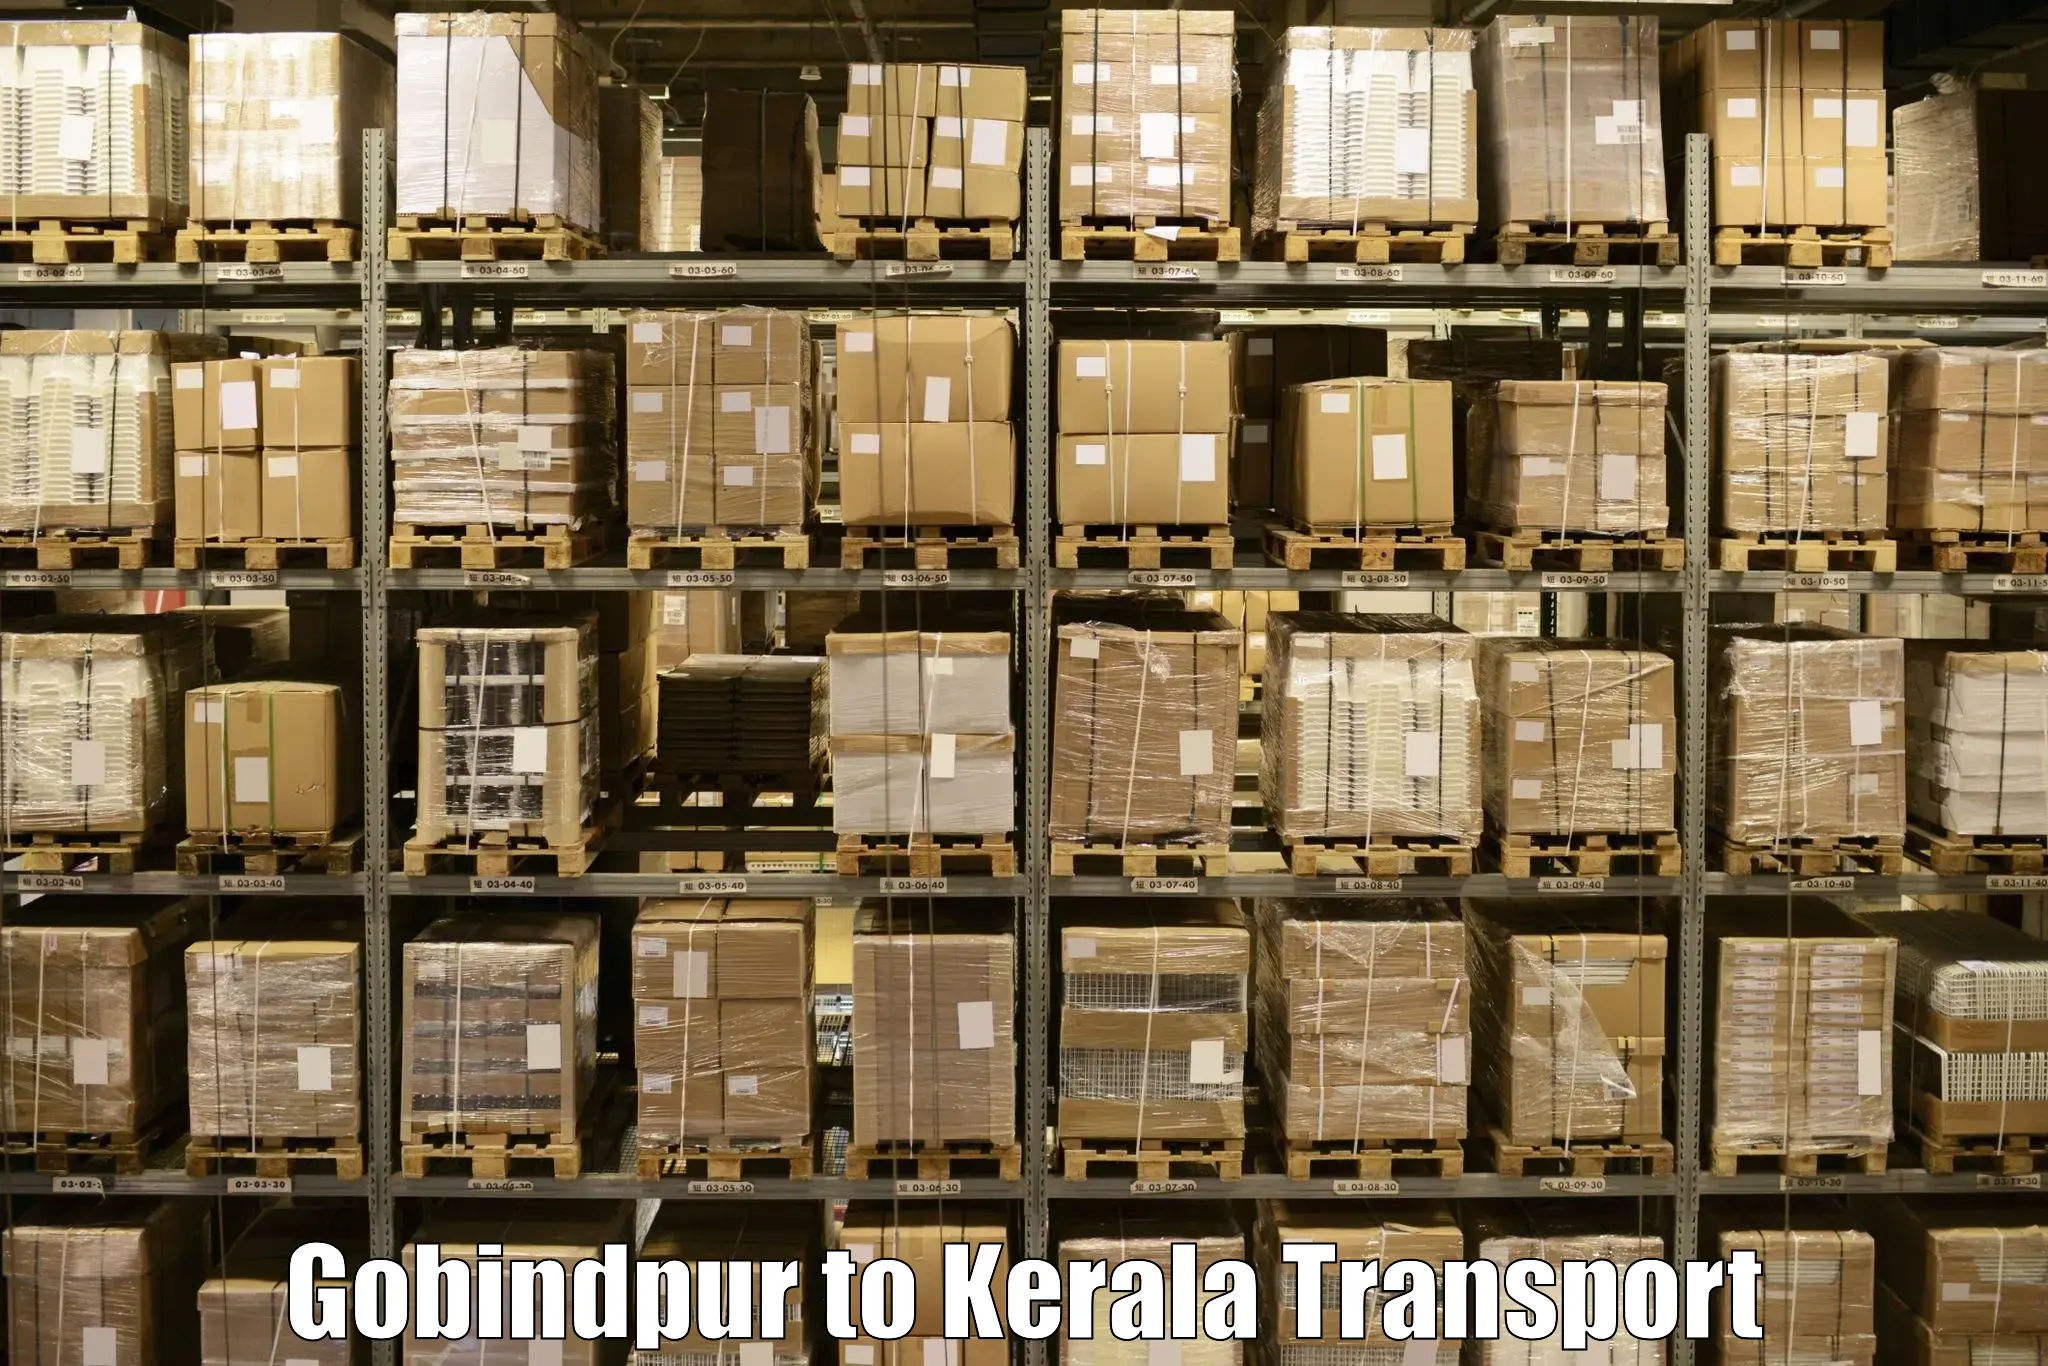 Interstate transport services Gobindpur to Trivandrum